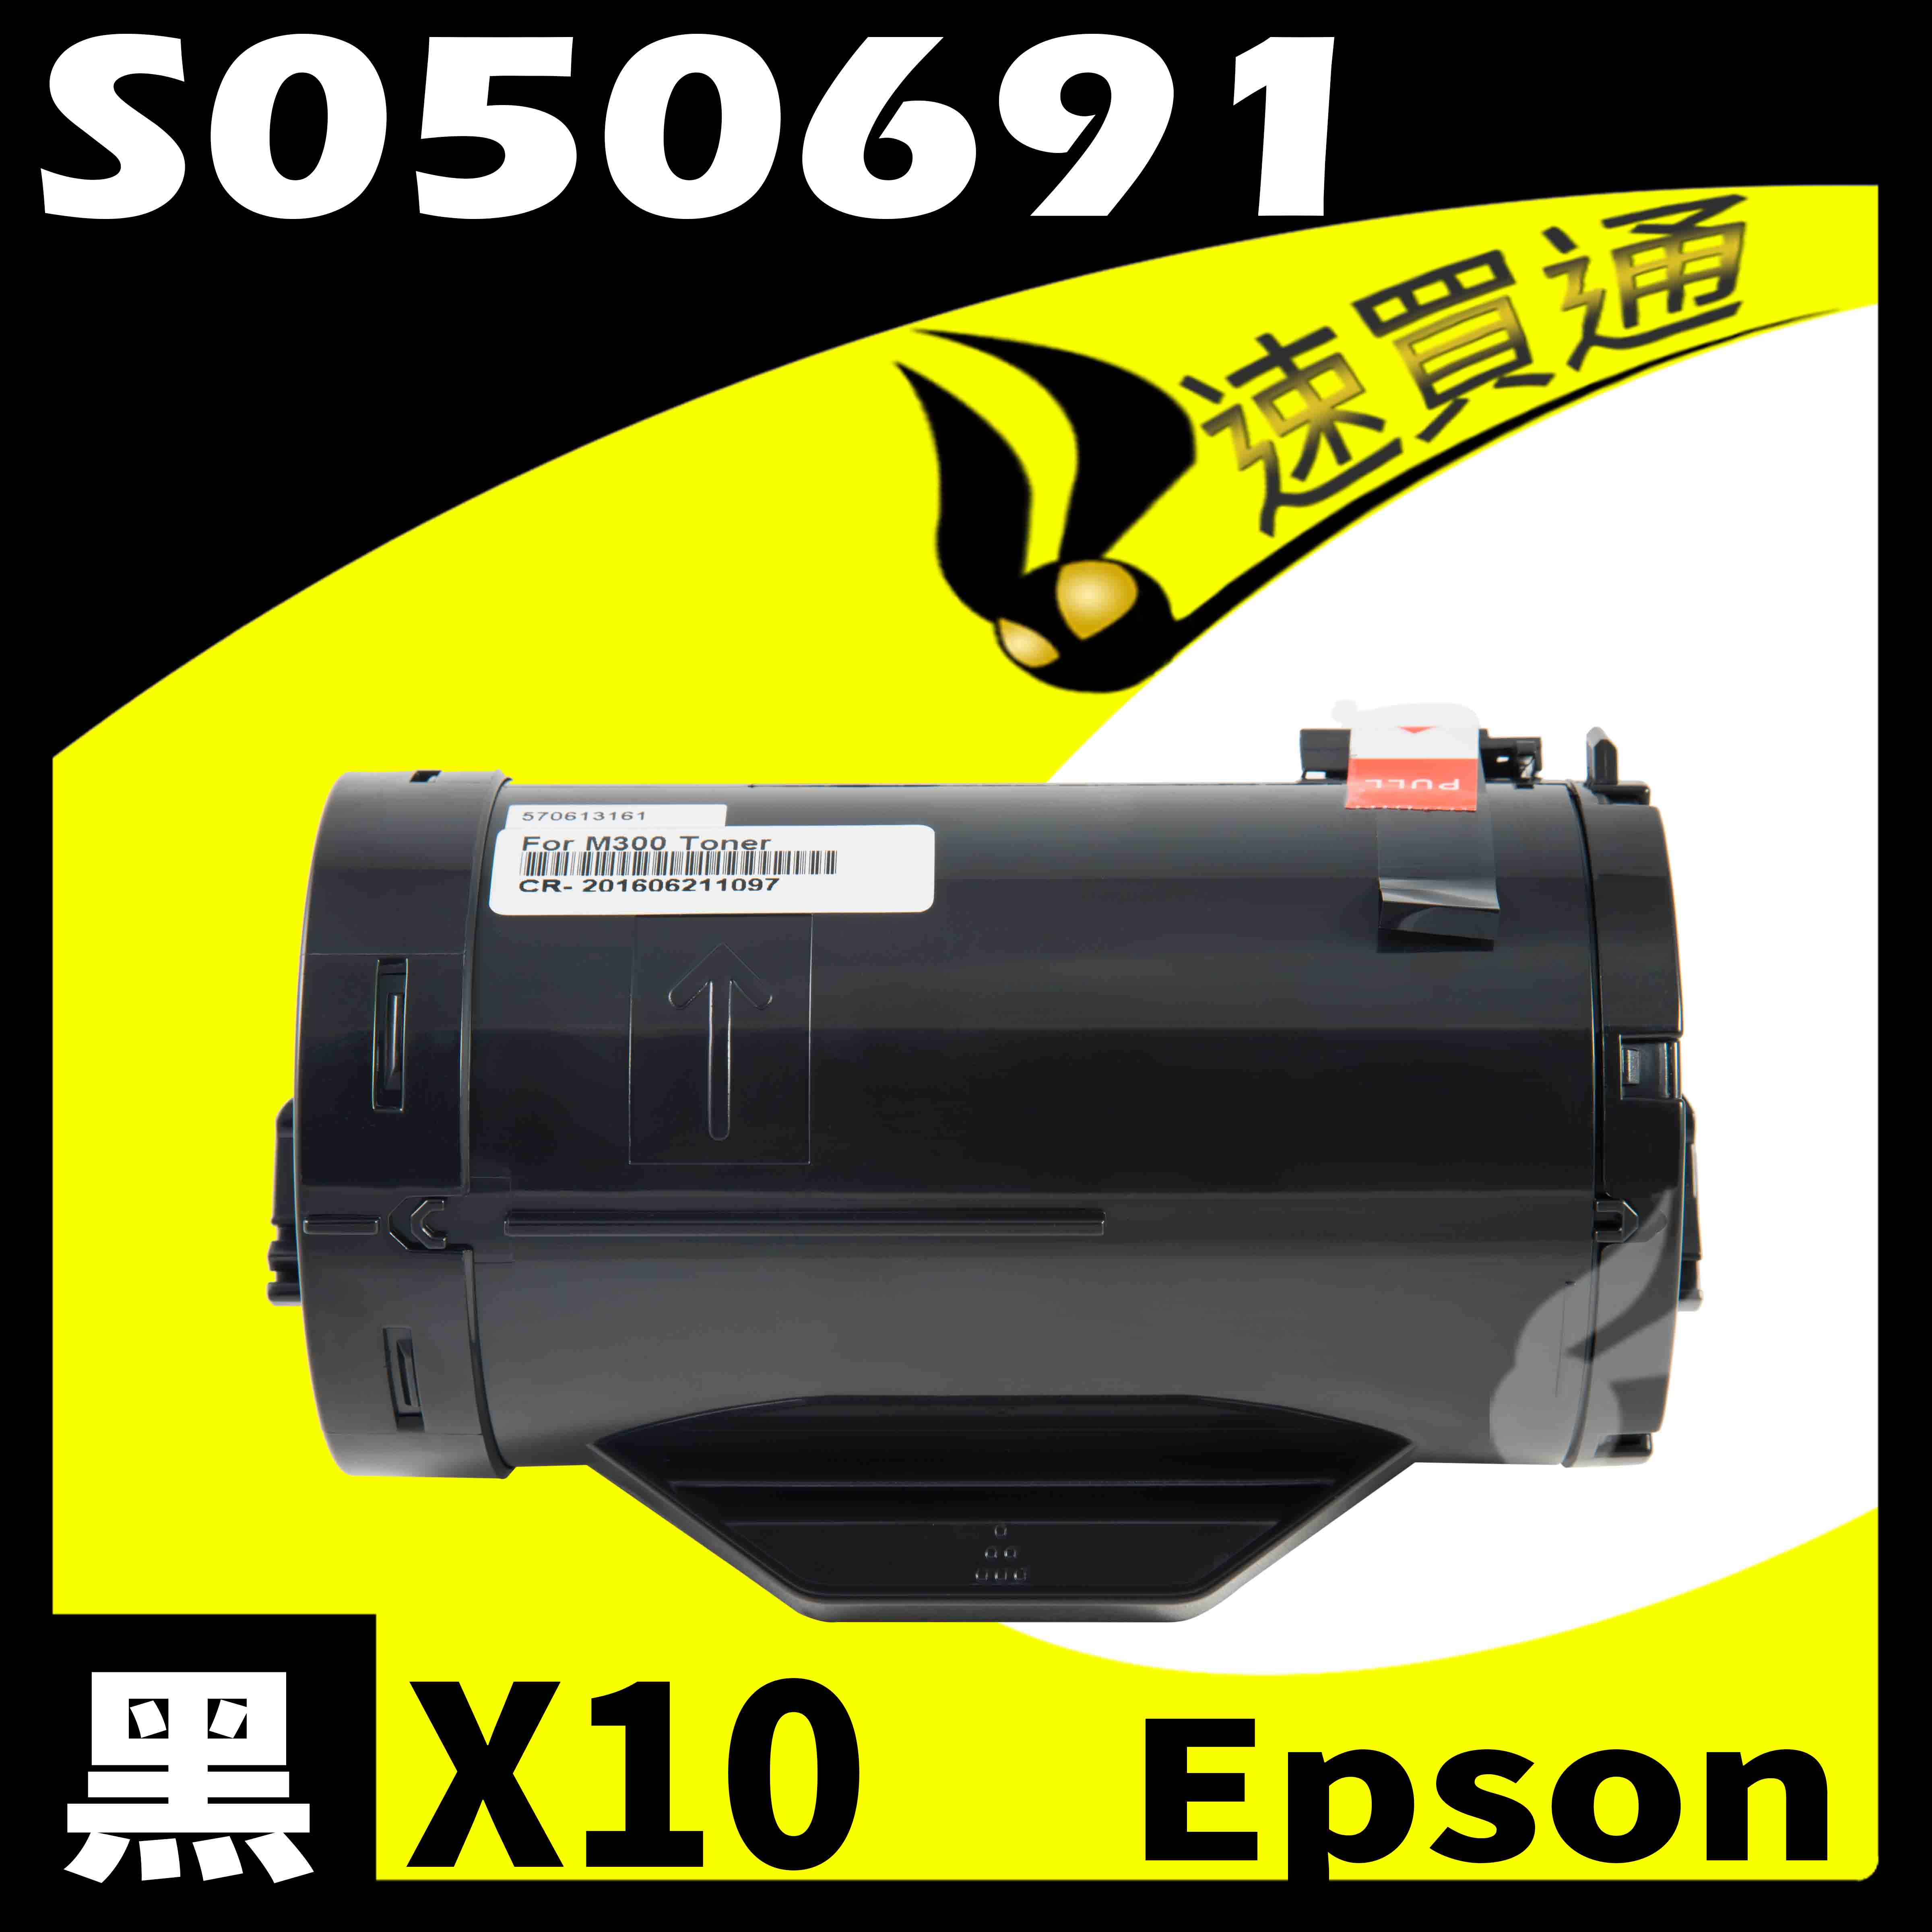 【速買通】超值10件組 EPSON M300DN/S050691 相容碳粉匣